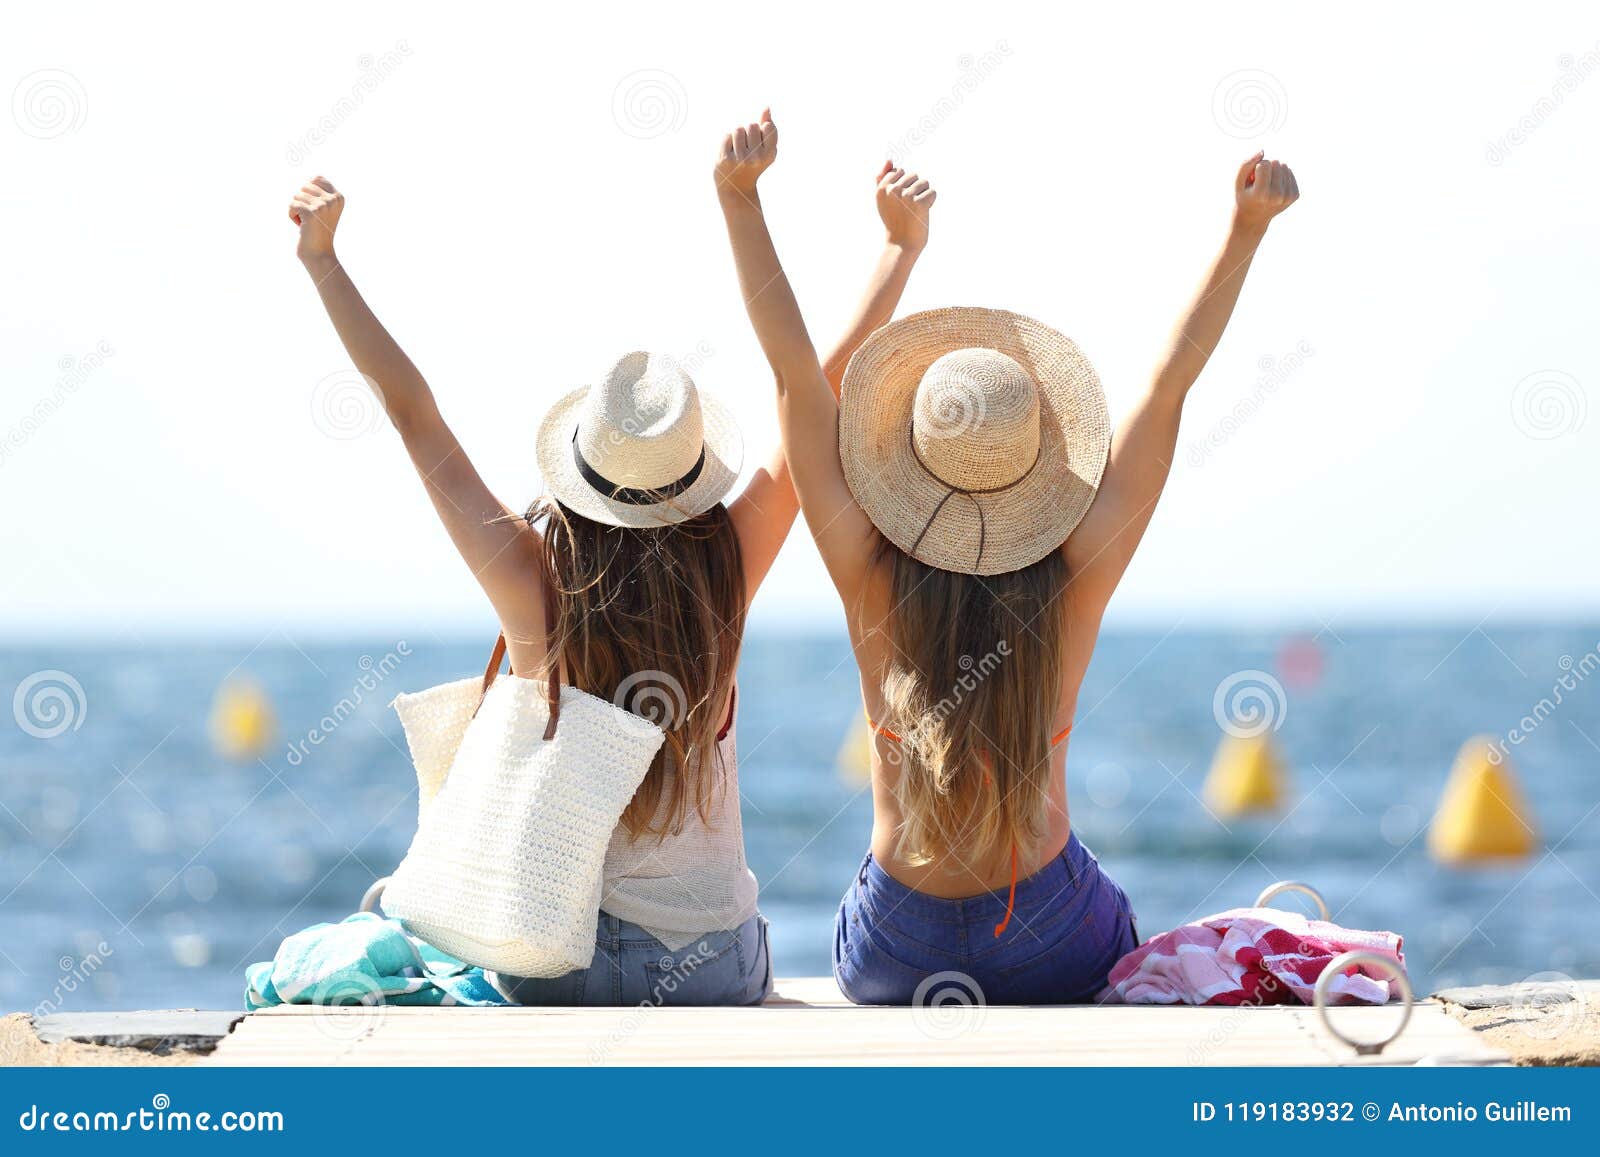 joyful tourists on summer vacations on the beach